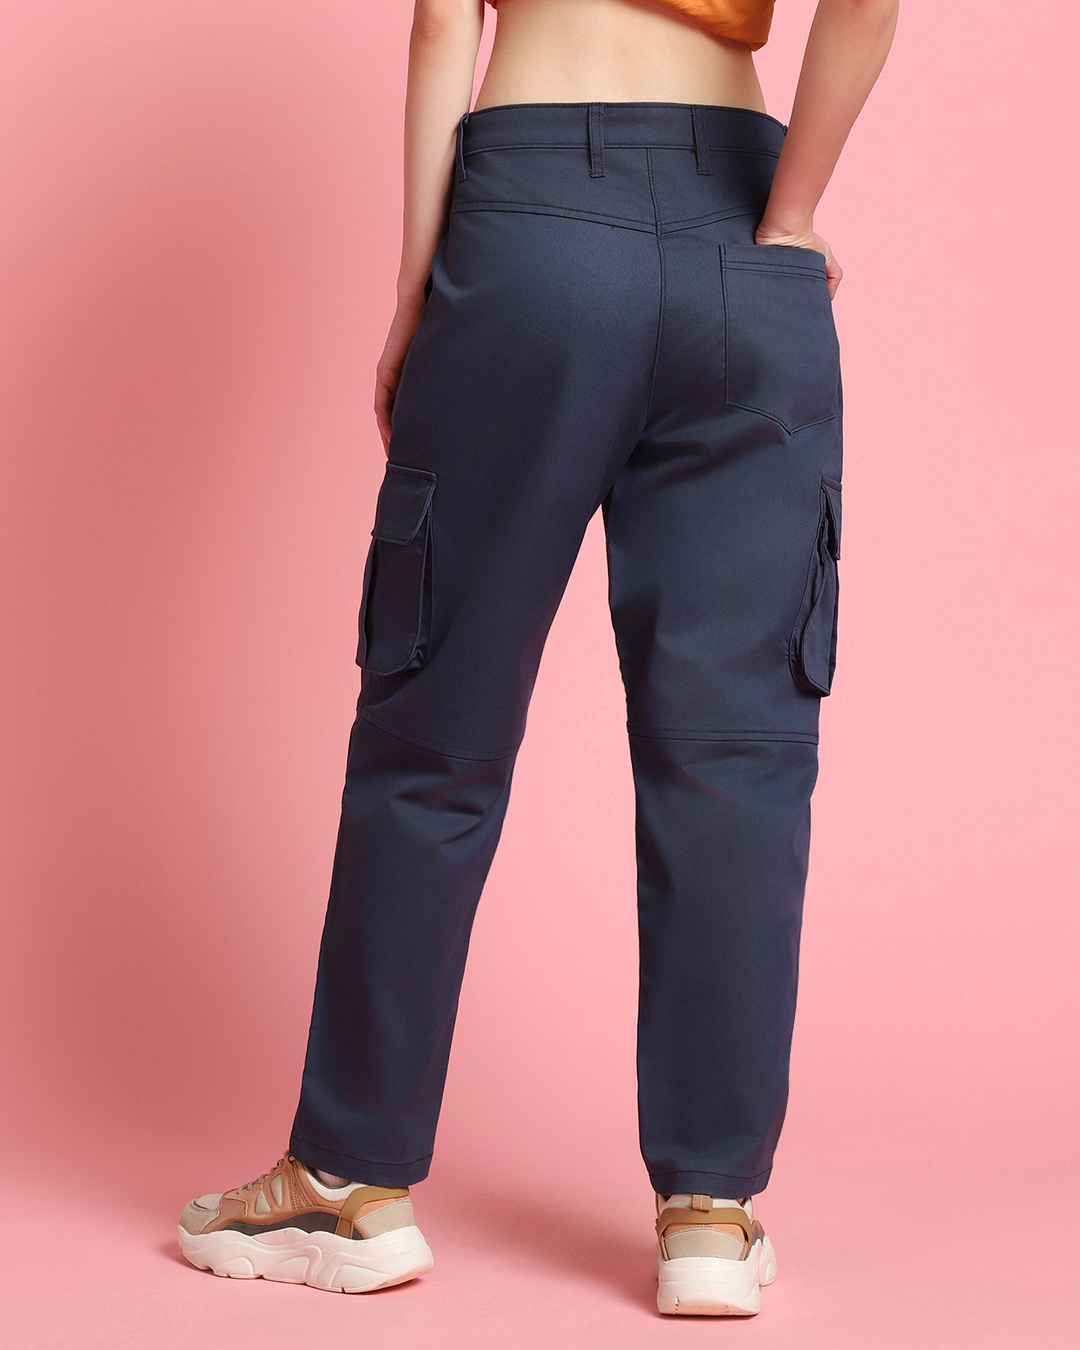 Buy Women's Blue Straight Cargo Pants Online at Bewakoof